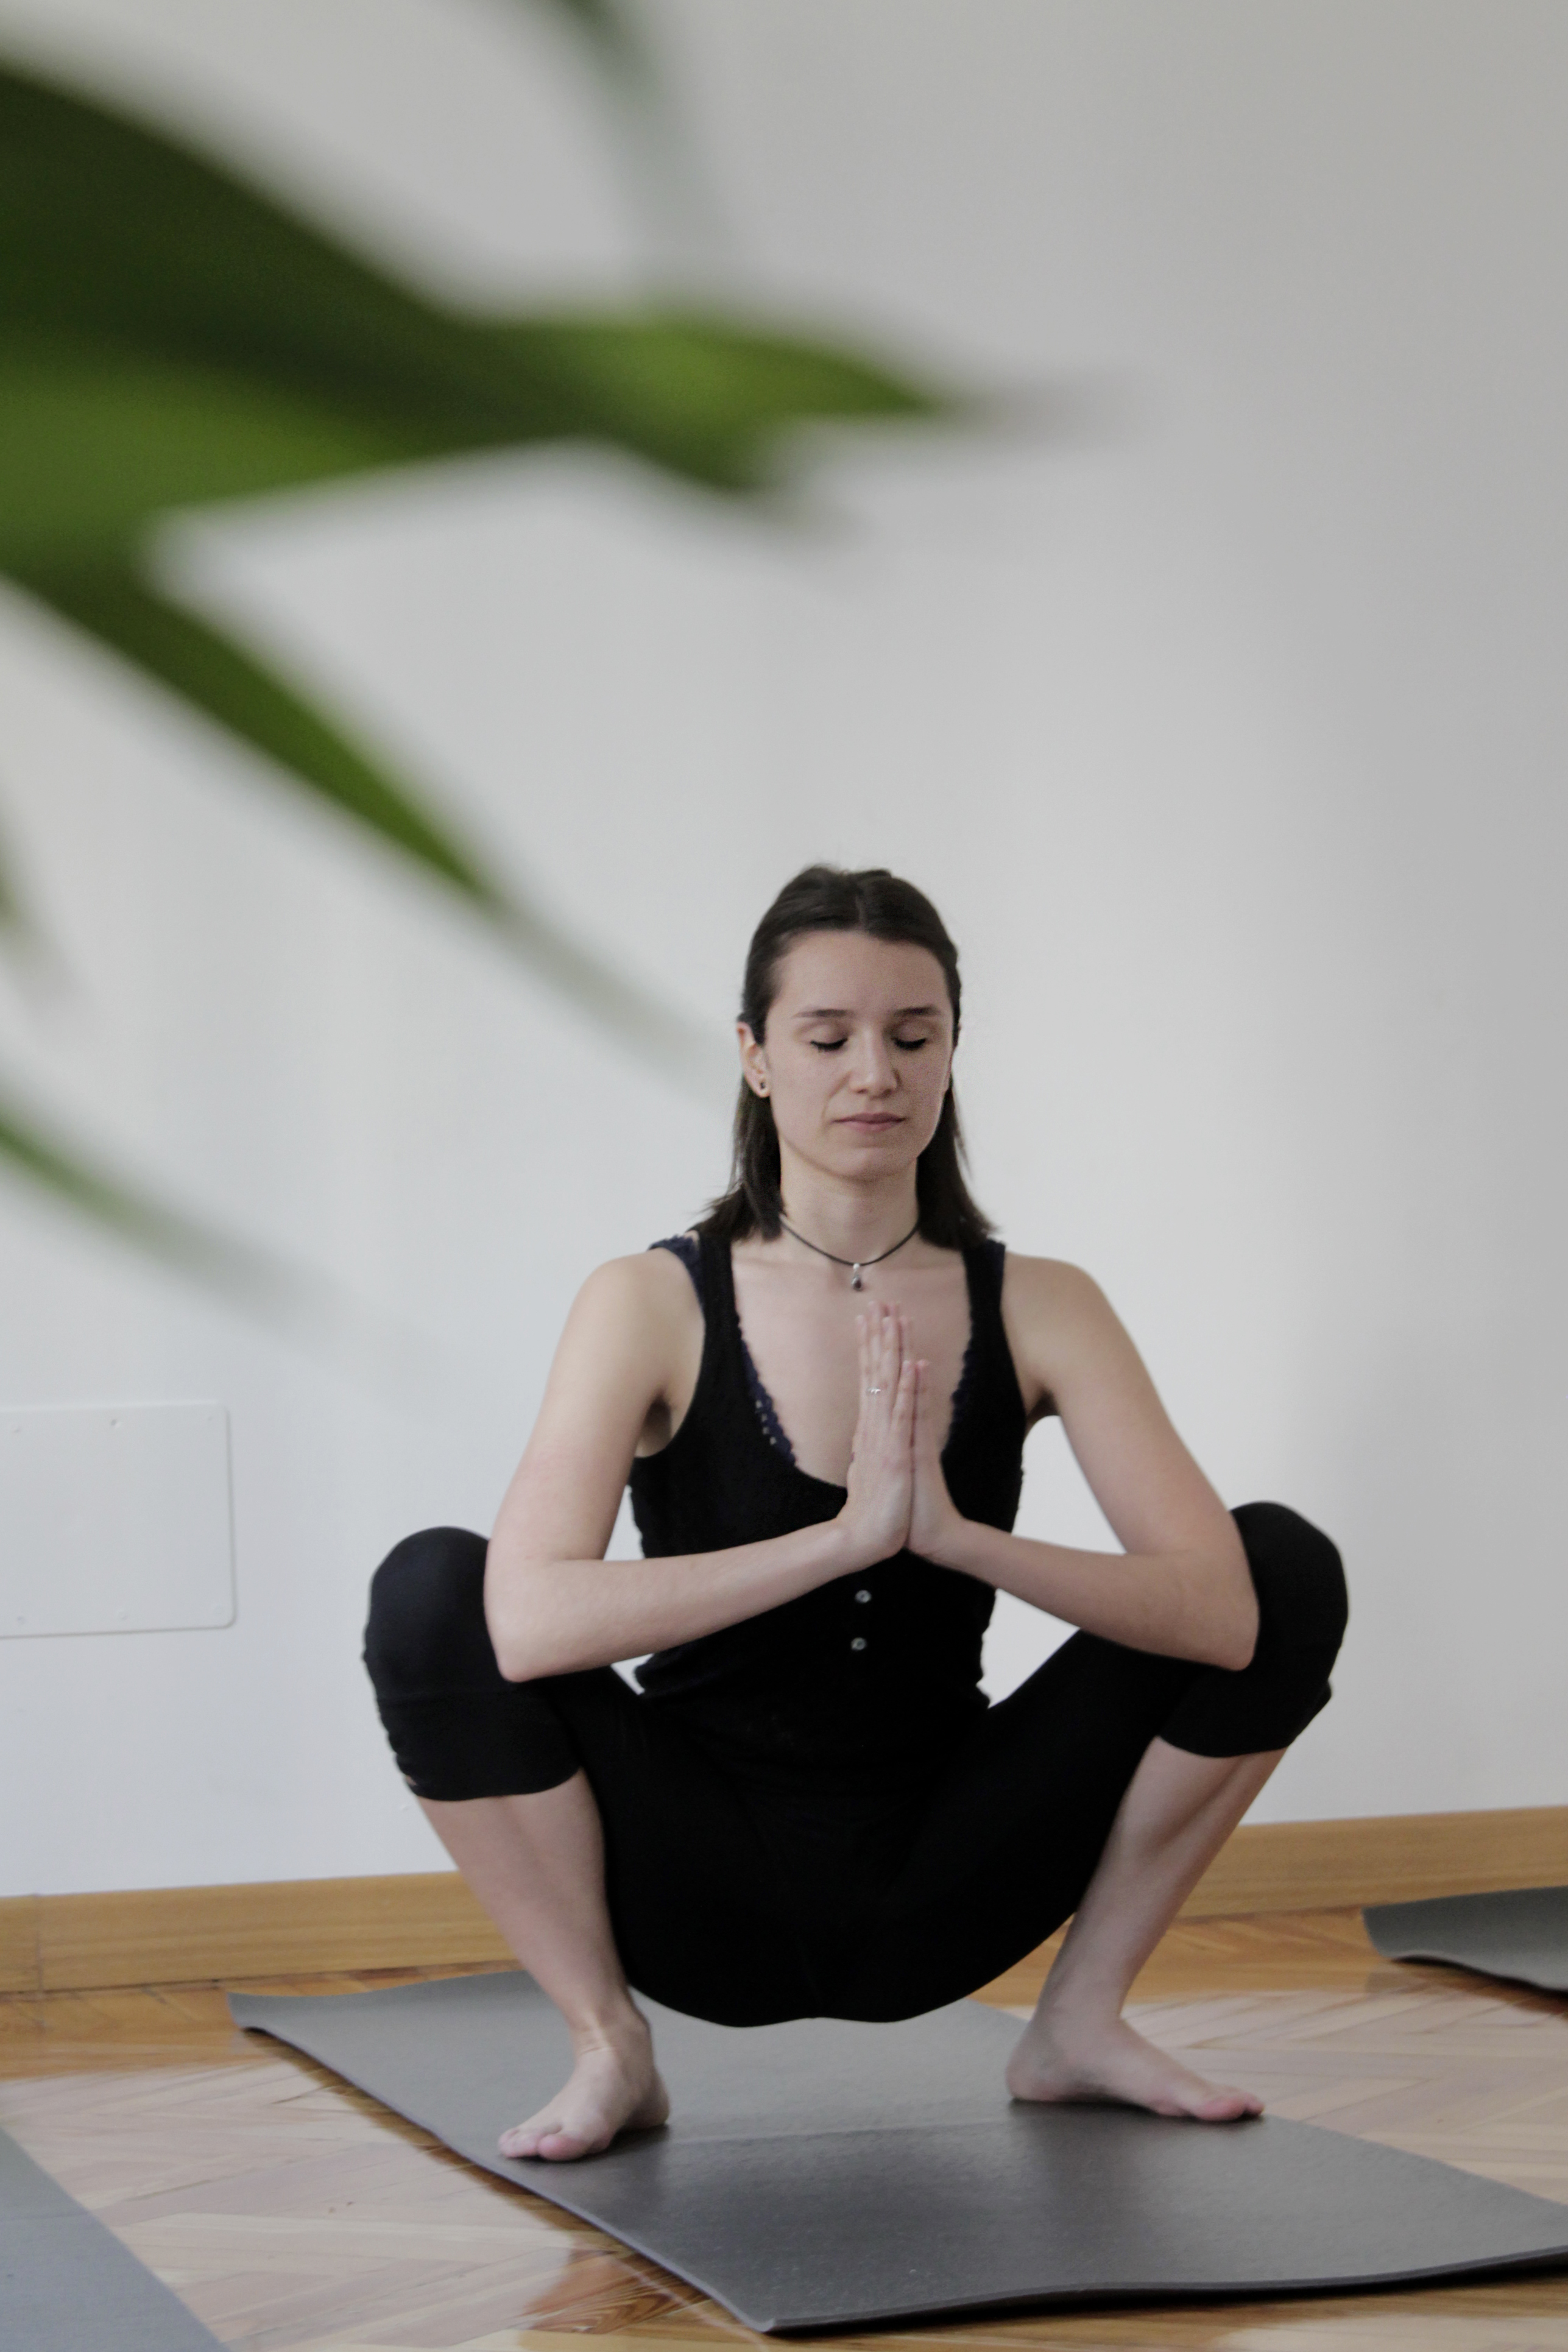 Clases de Yoga online para hoy 23.03.20. Paciencia y Concentración.